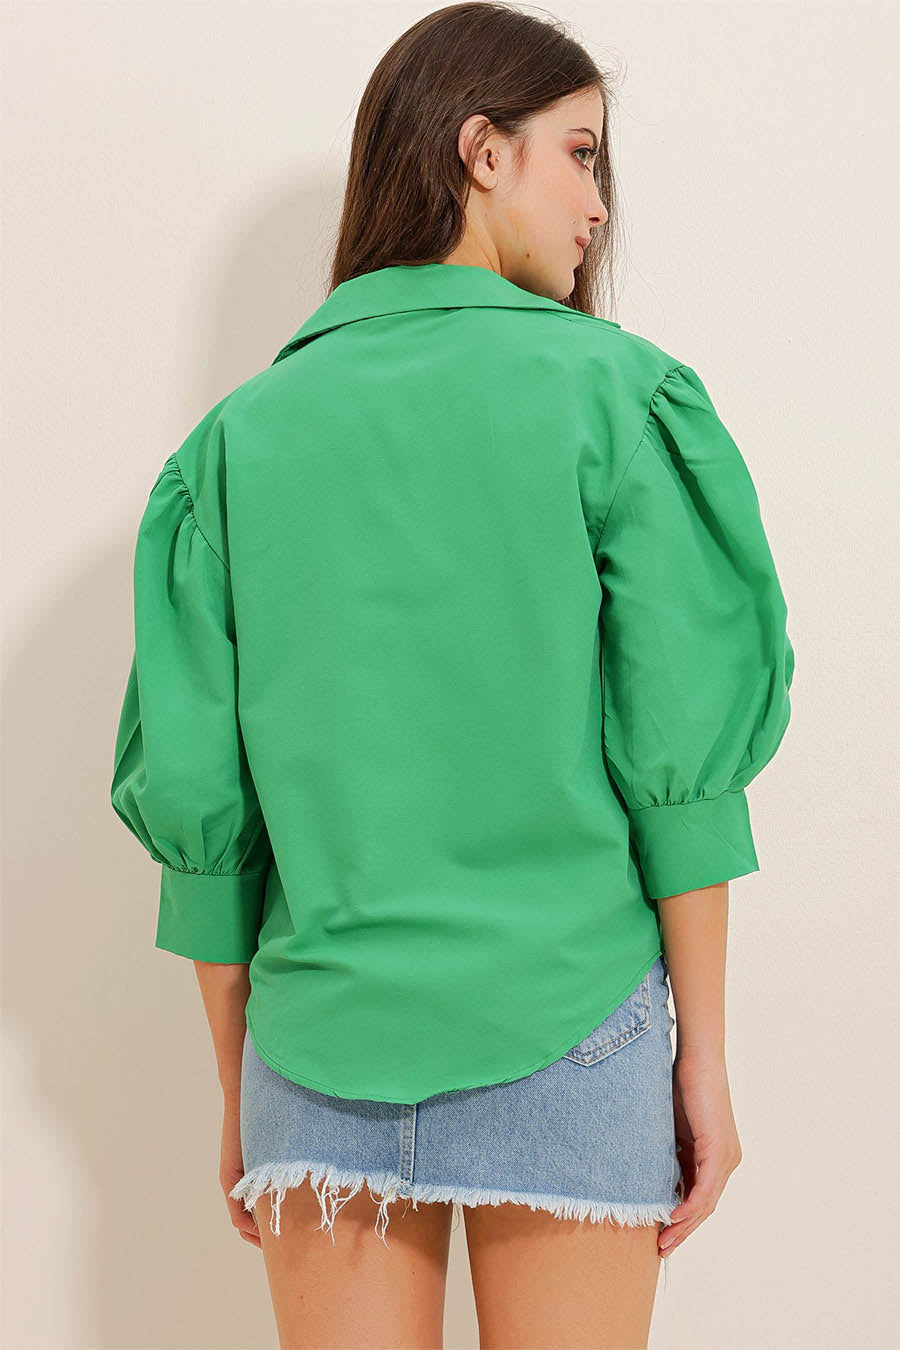 Γυναικείο πουκάμισο Maryam, Πράσινο 6